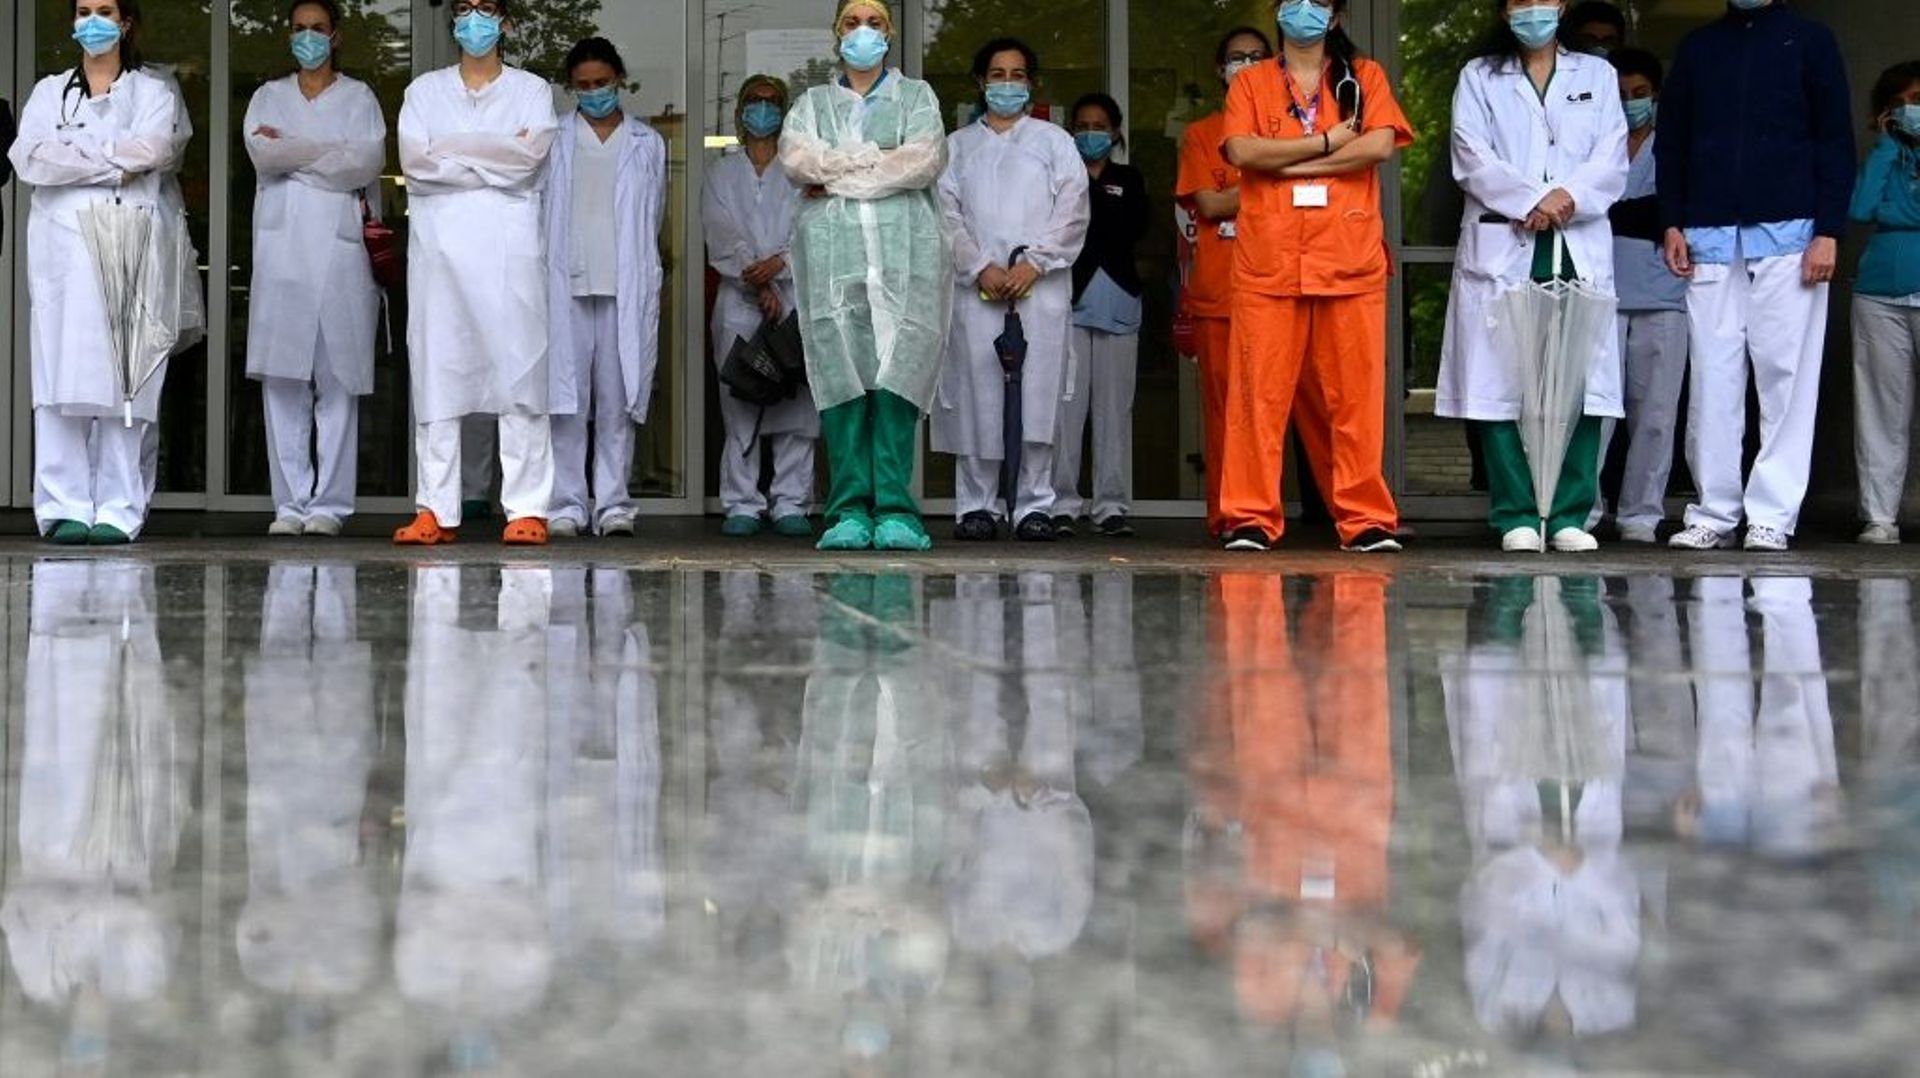 Des soignants observent une minute de silence en hommage à leurs collègues morts du Covid-19 pendant la première vague de la pandémie, le 14 mai 2020 à l'hôpital Gregorio Marañon de Madrid